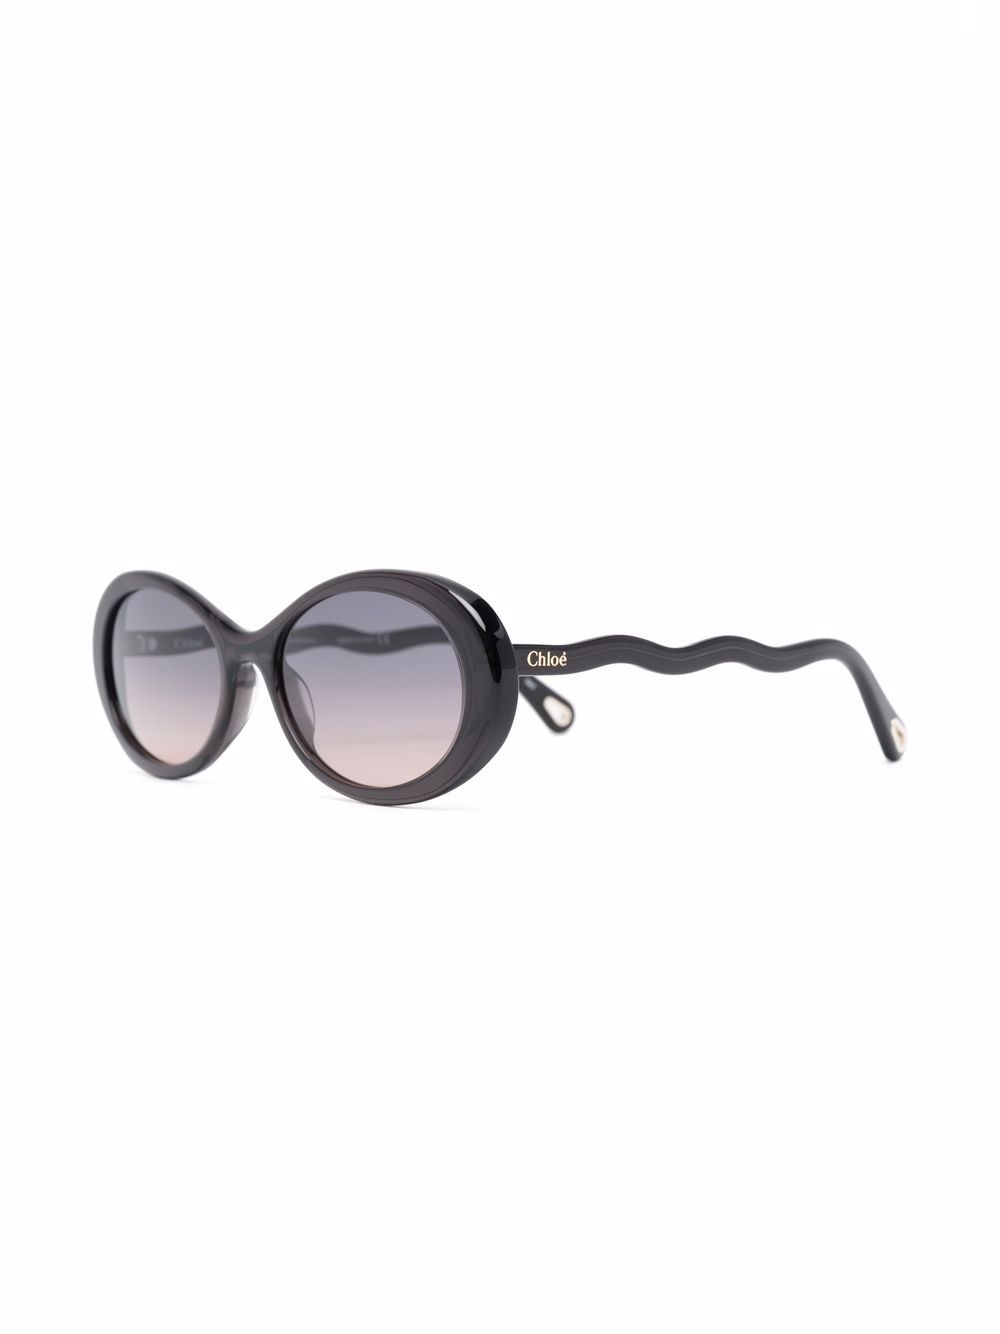 фото Chloé eyewear солнцезащитные очки ch0088s в овальной оправе